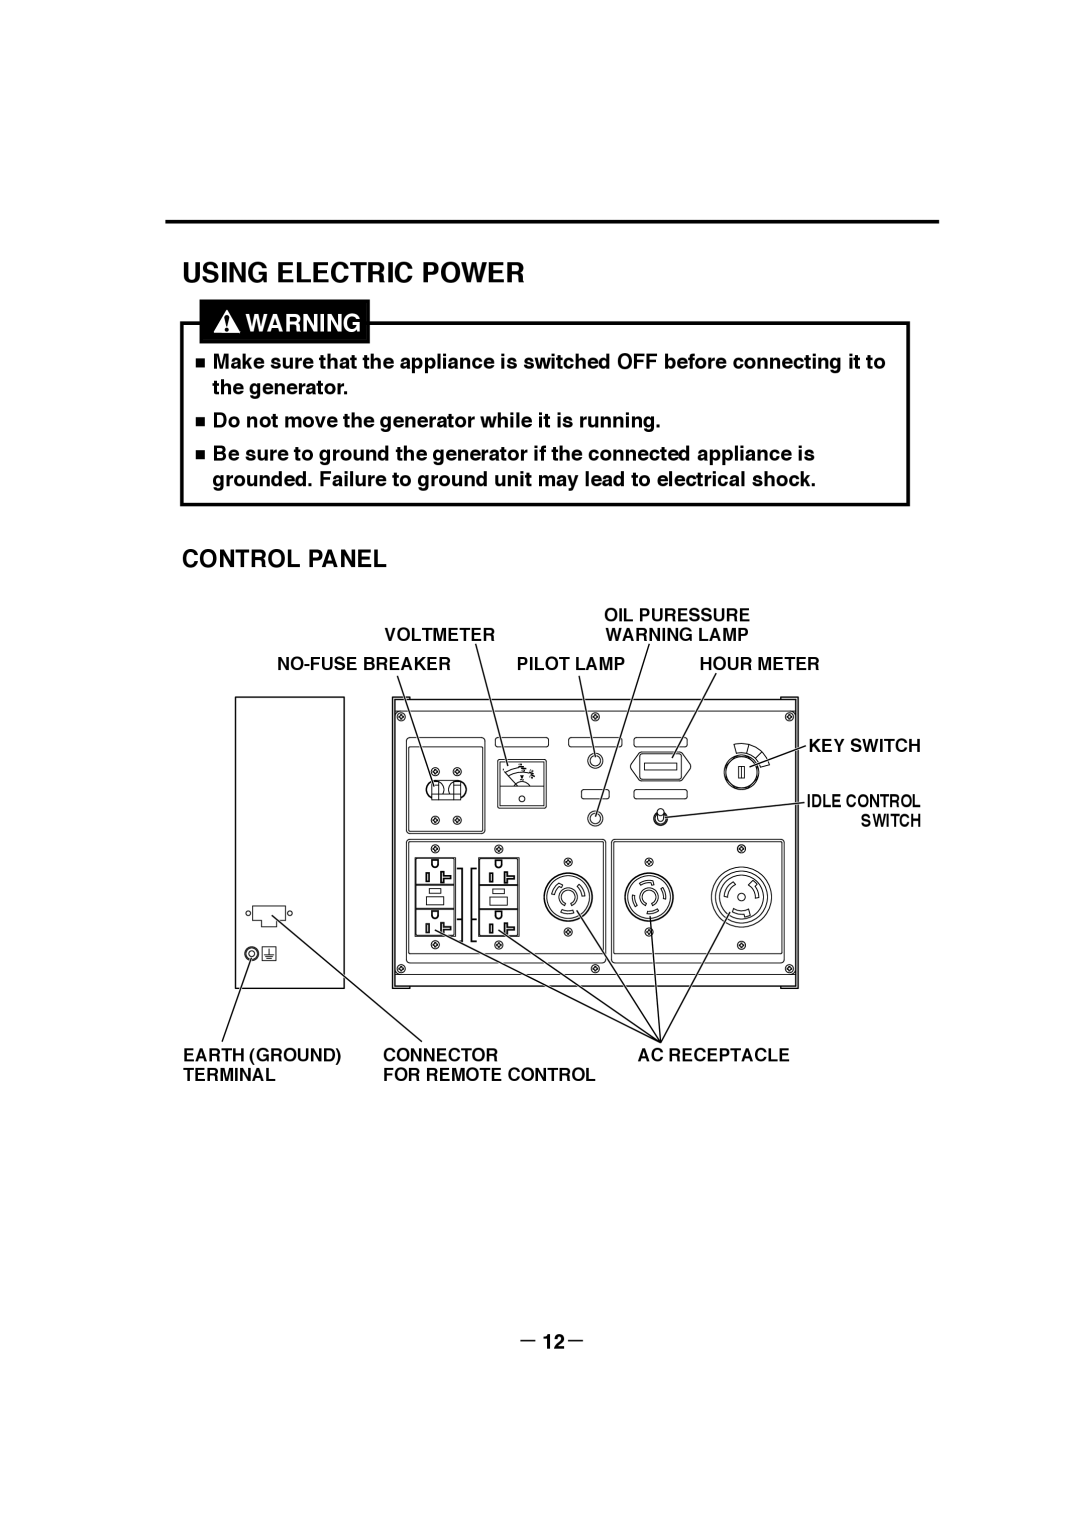 Makita G12010R Using Electric Power, Control Panel, Voltmeter, Oil Puressure, Warning Lamp, No-Fusebreaker, Pilot Lamp 